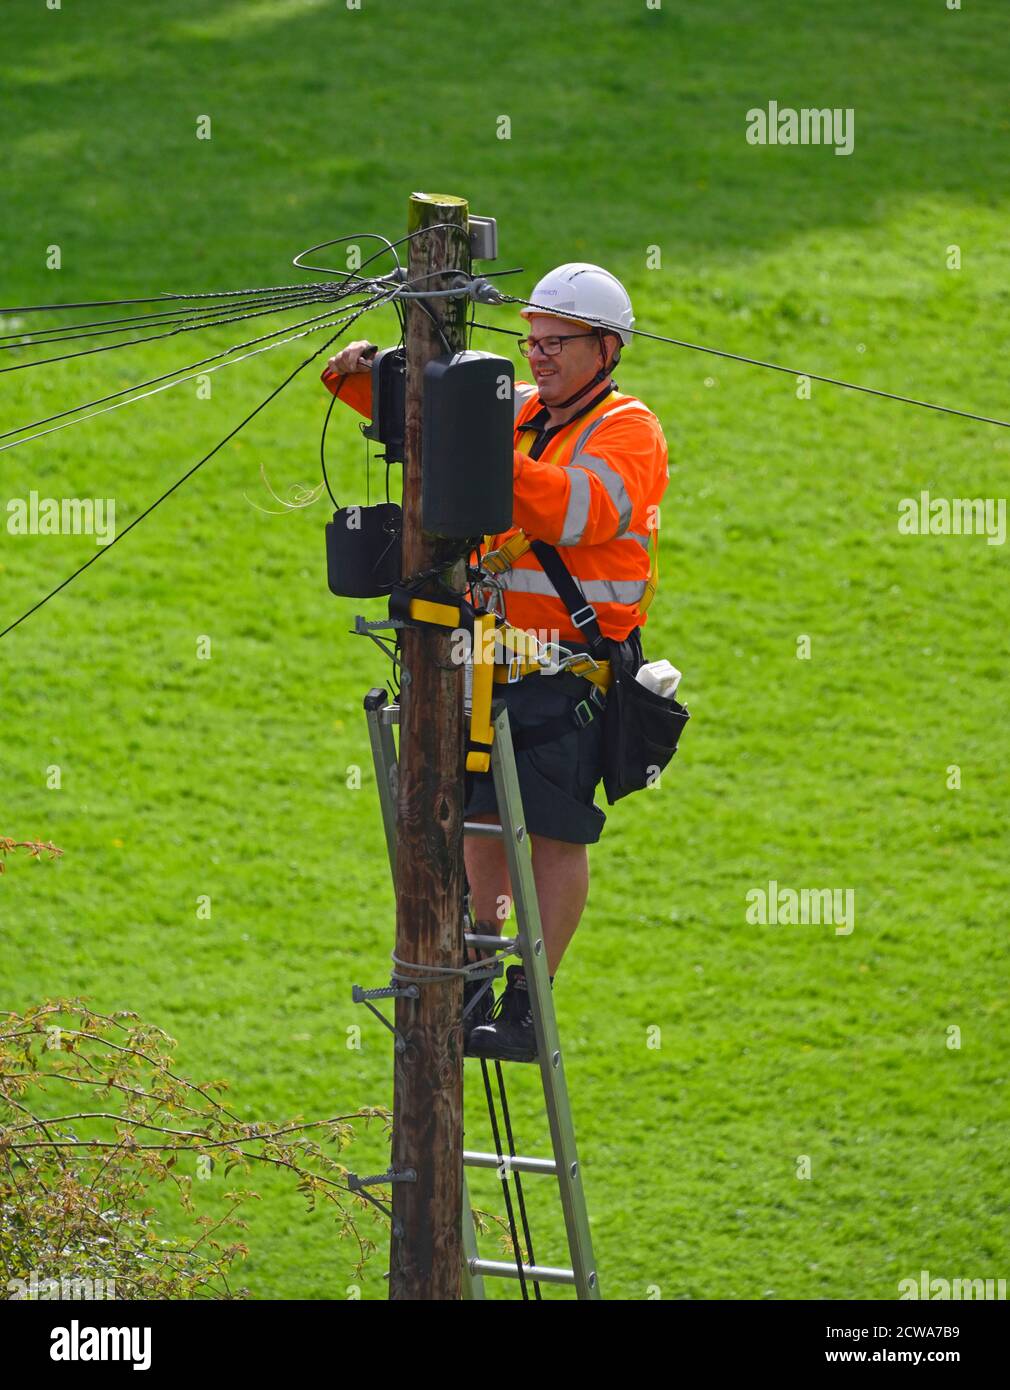 Openreach Ingenieur auf Leiter oben auf Holzmast, Arbeiten an Telekommunikationsausrüstung. Bowling Fell, Kendal, Cumbria, England, Vereinigtes Königreich, Europa. Stockfoto